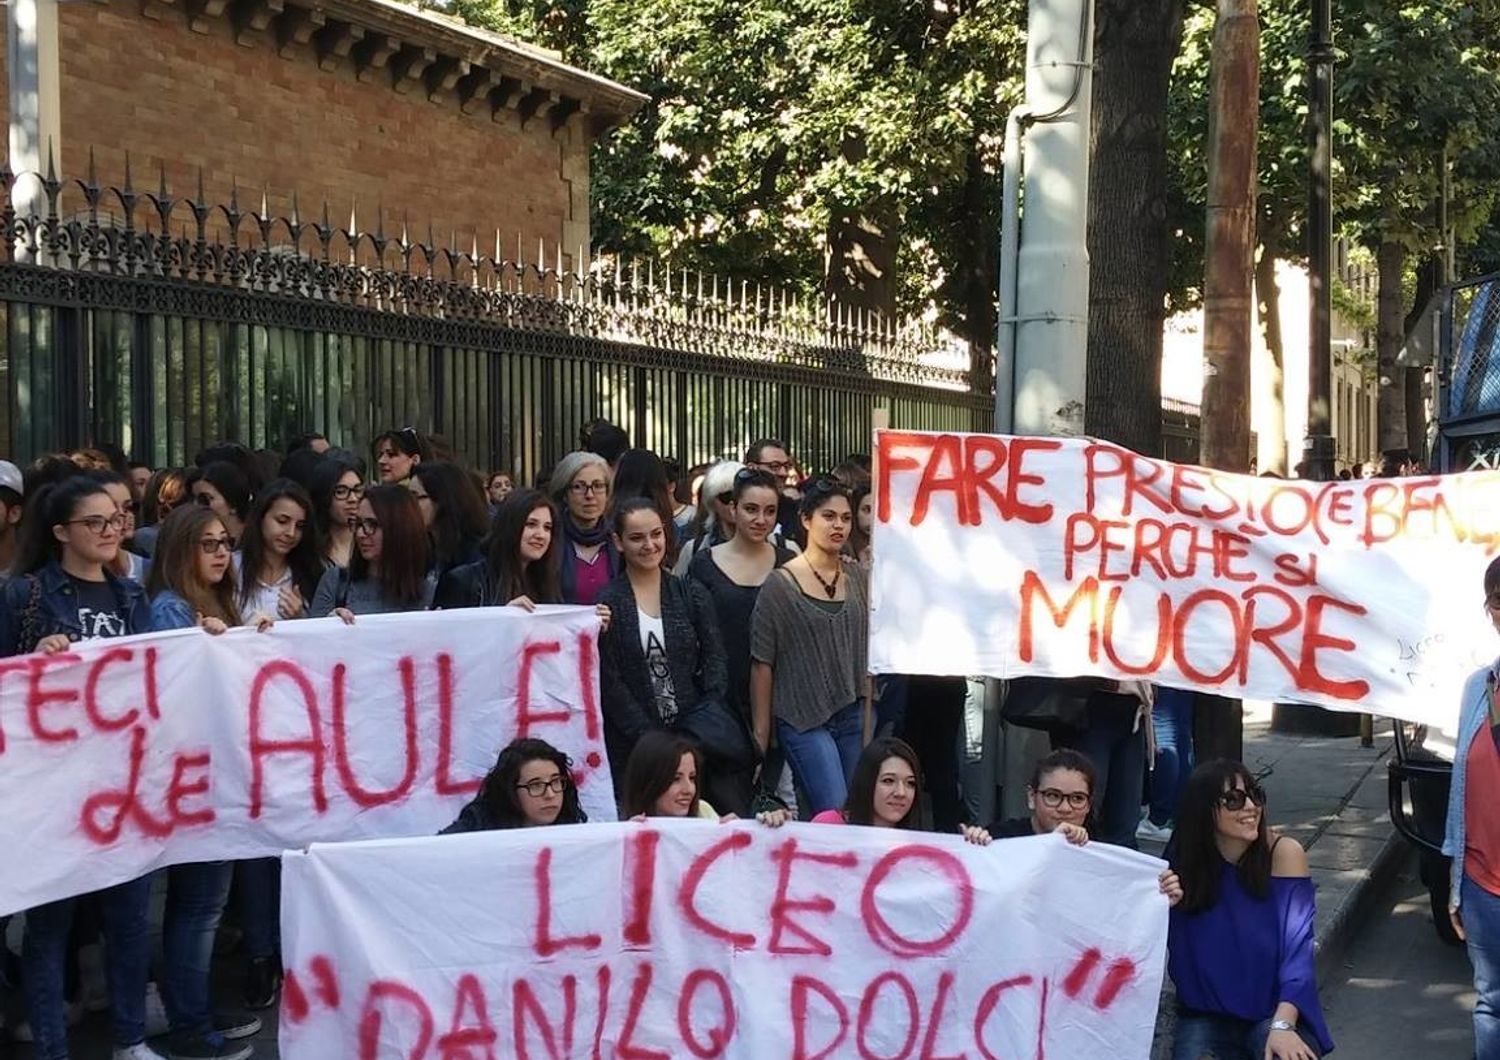 &nbsp;Liceo Danilo Dolci, Palermo